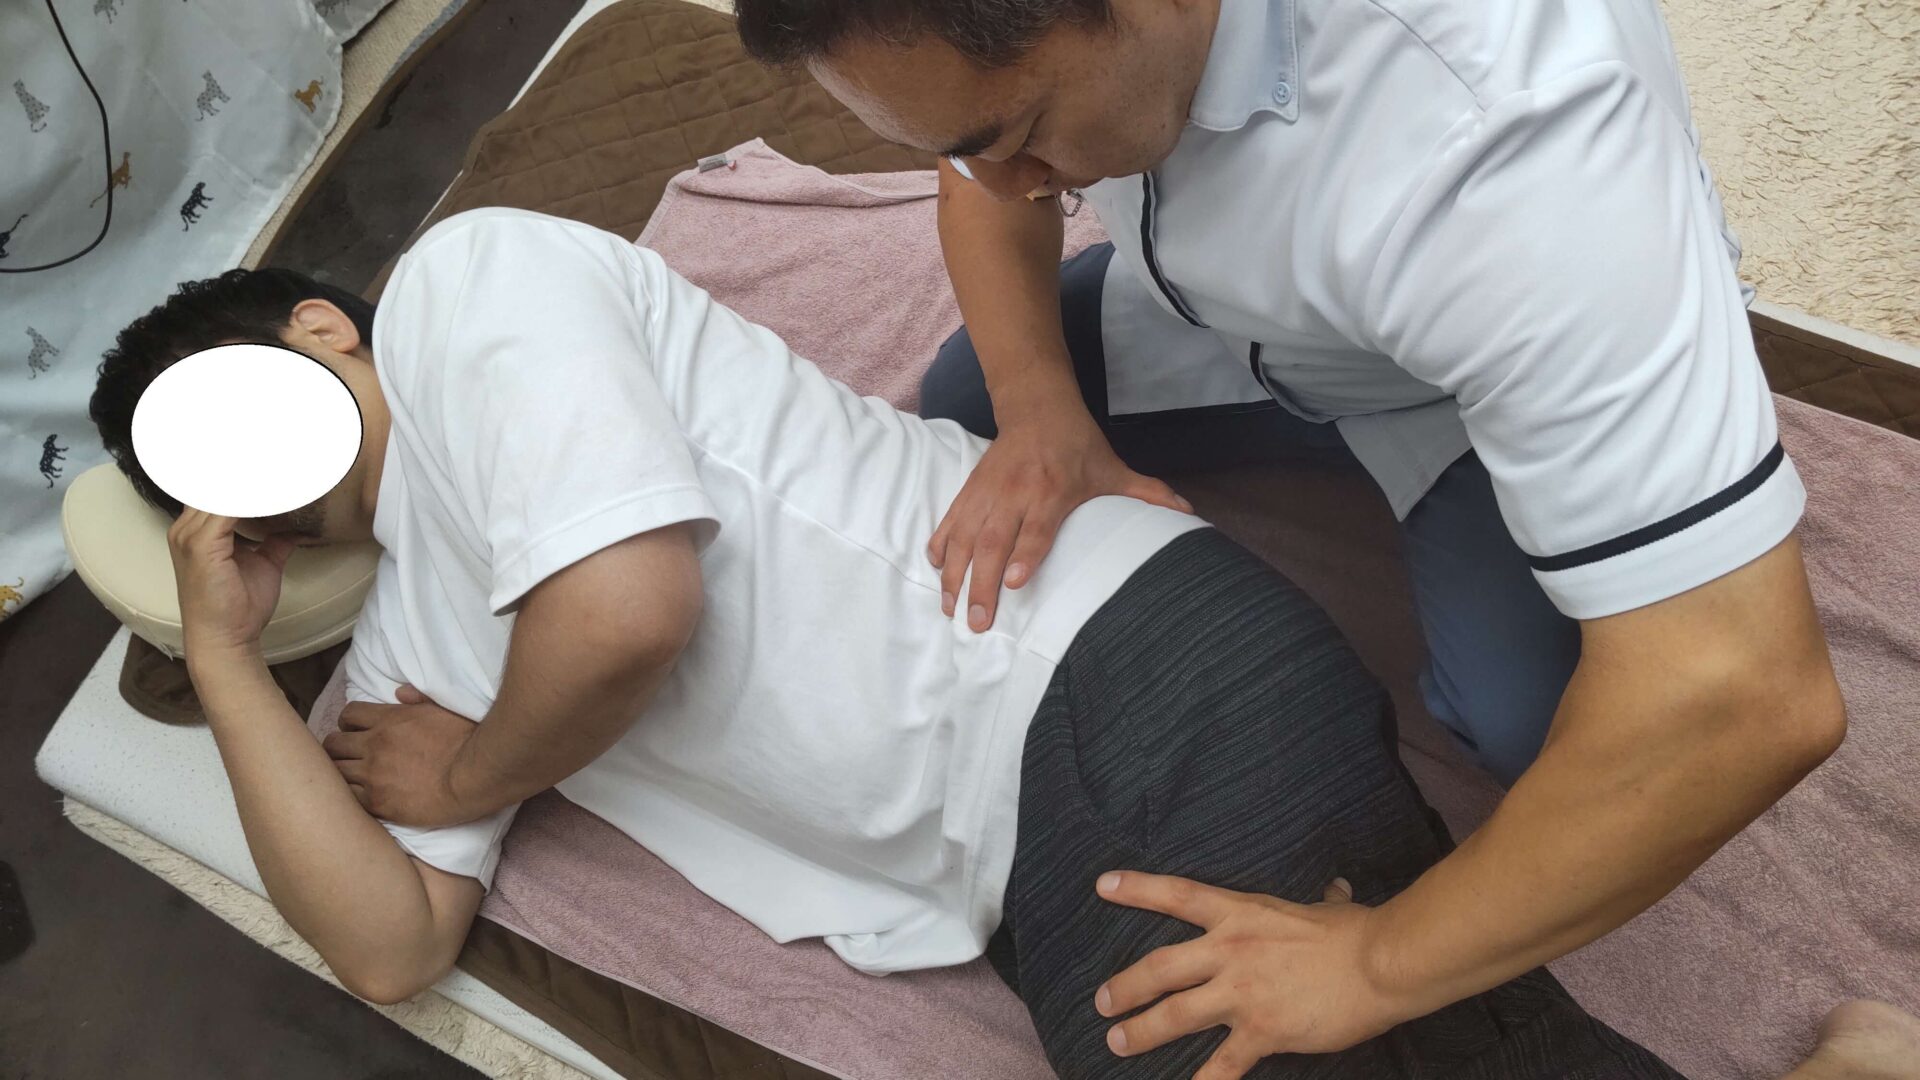 千葉県浦安市で腰痛・腰椎椎間板ヘルニアを患う患者様の整体治療